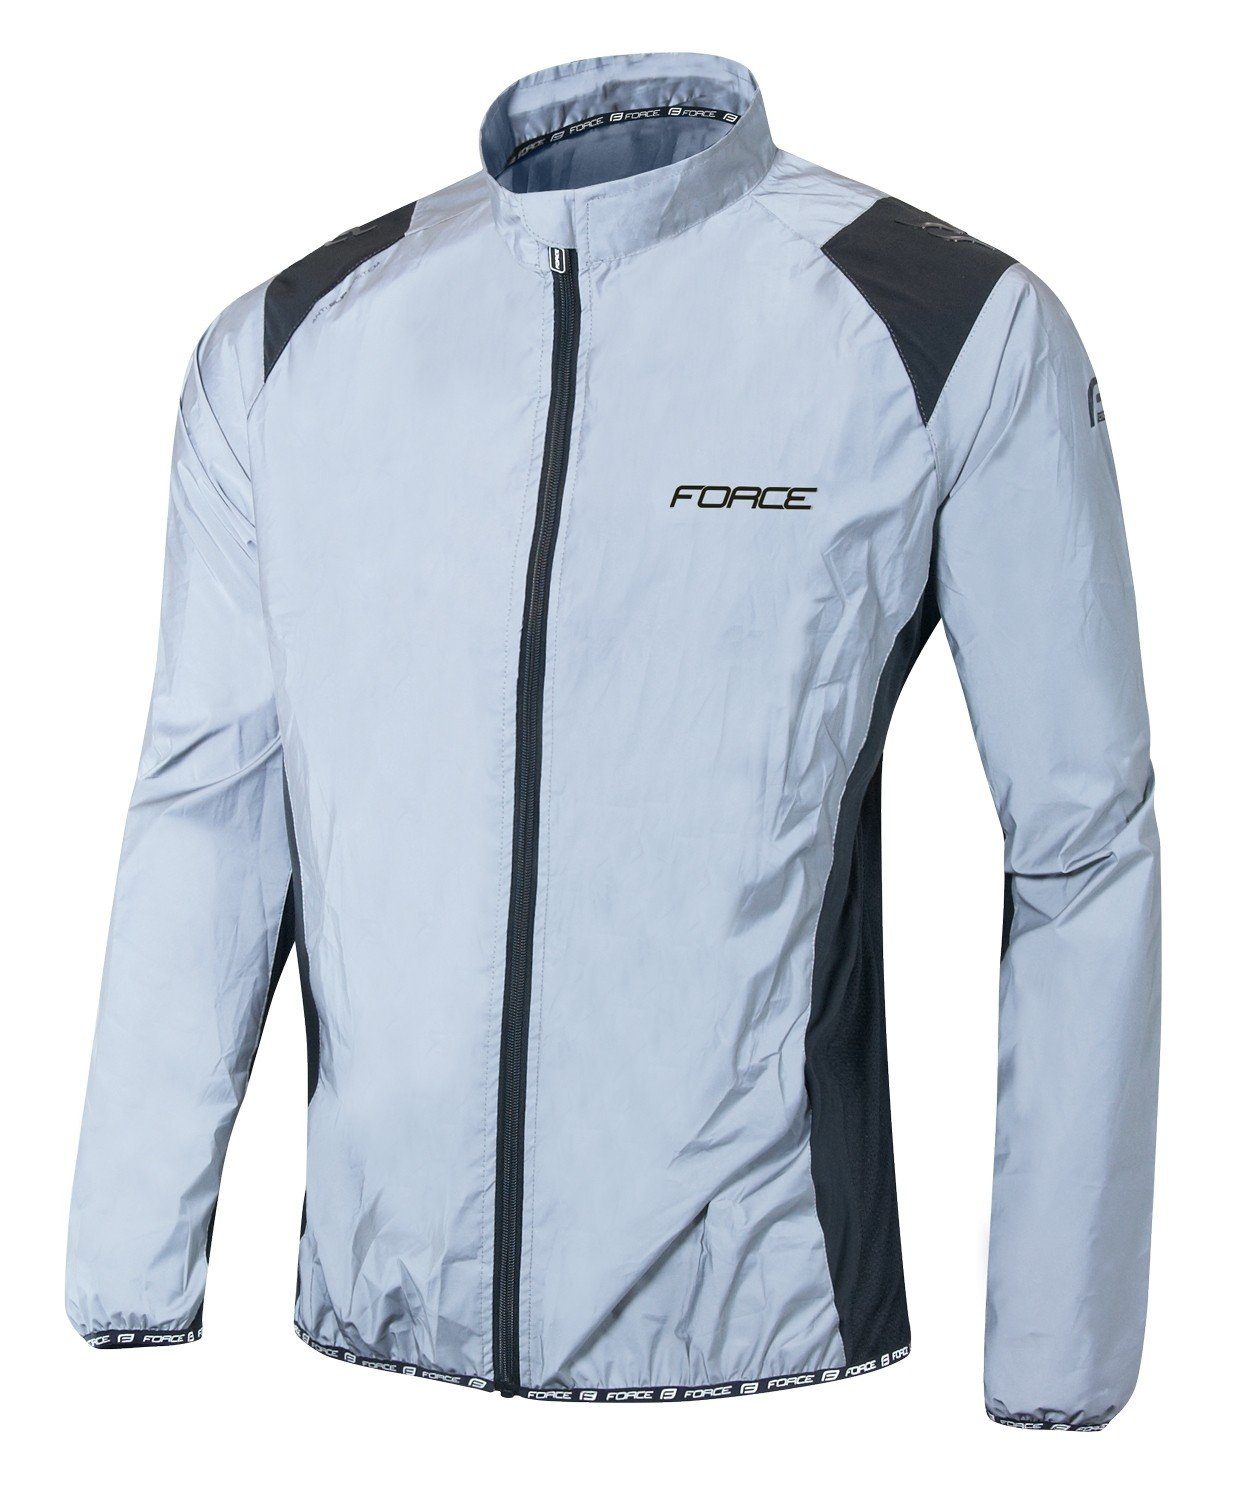 FORCE Fahrradjacke Jacke FORCE reflektierend +10 °C bis +15 °C